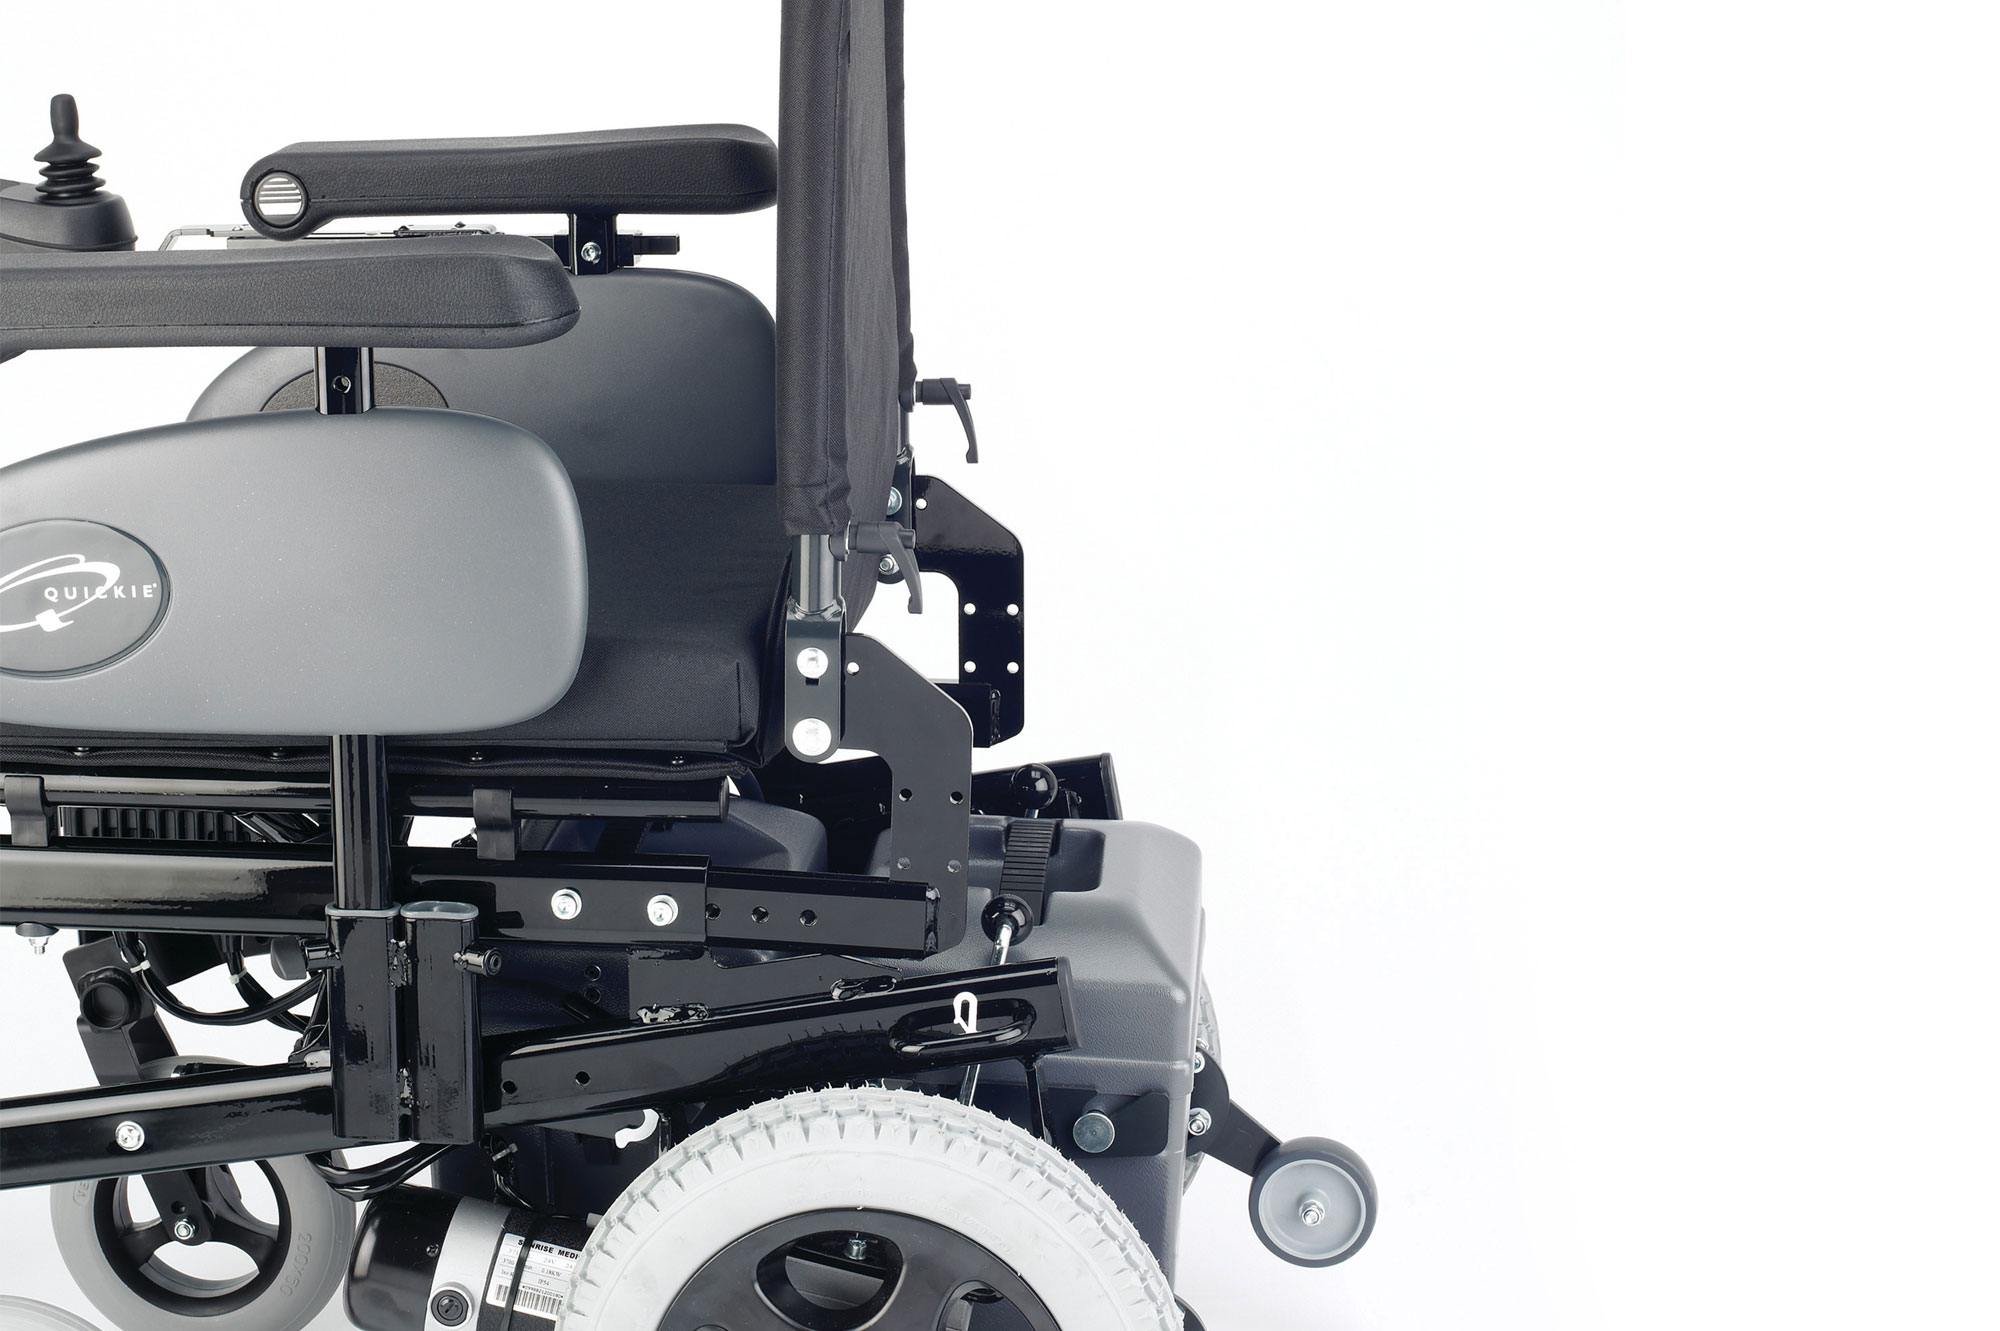 Quickie Rumba Modular Powered Wheelchair